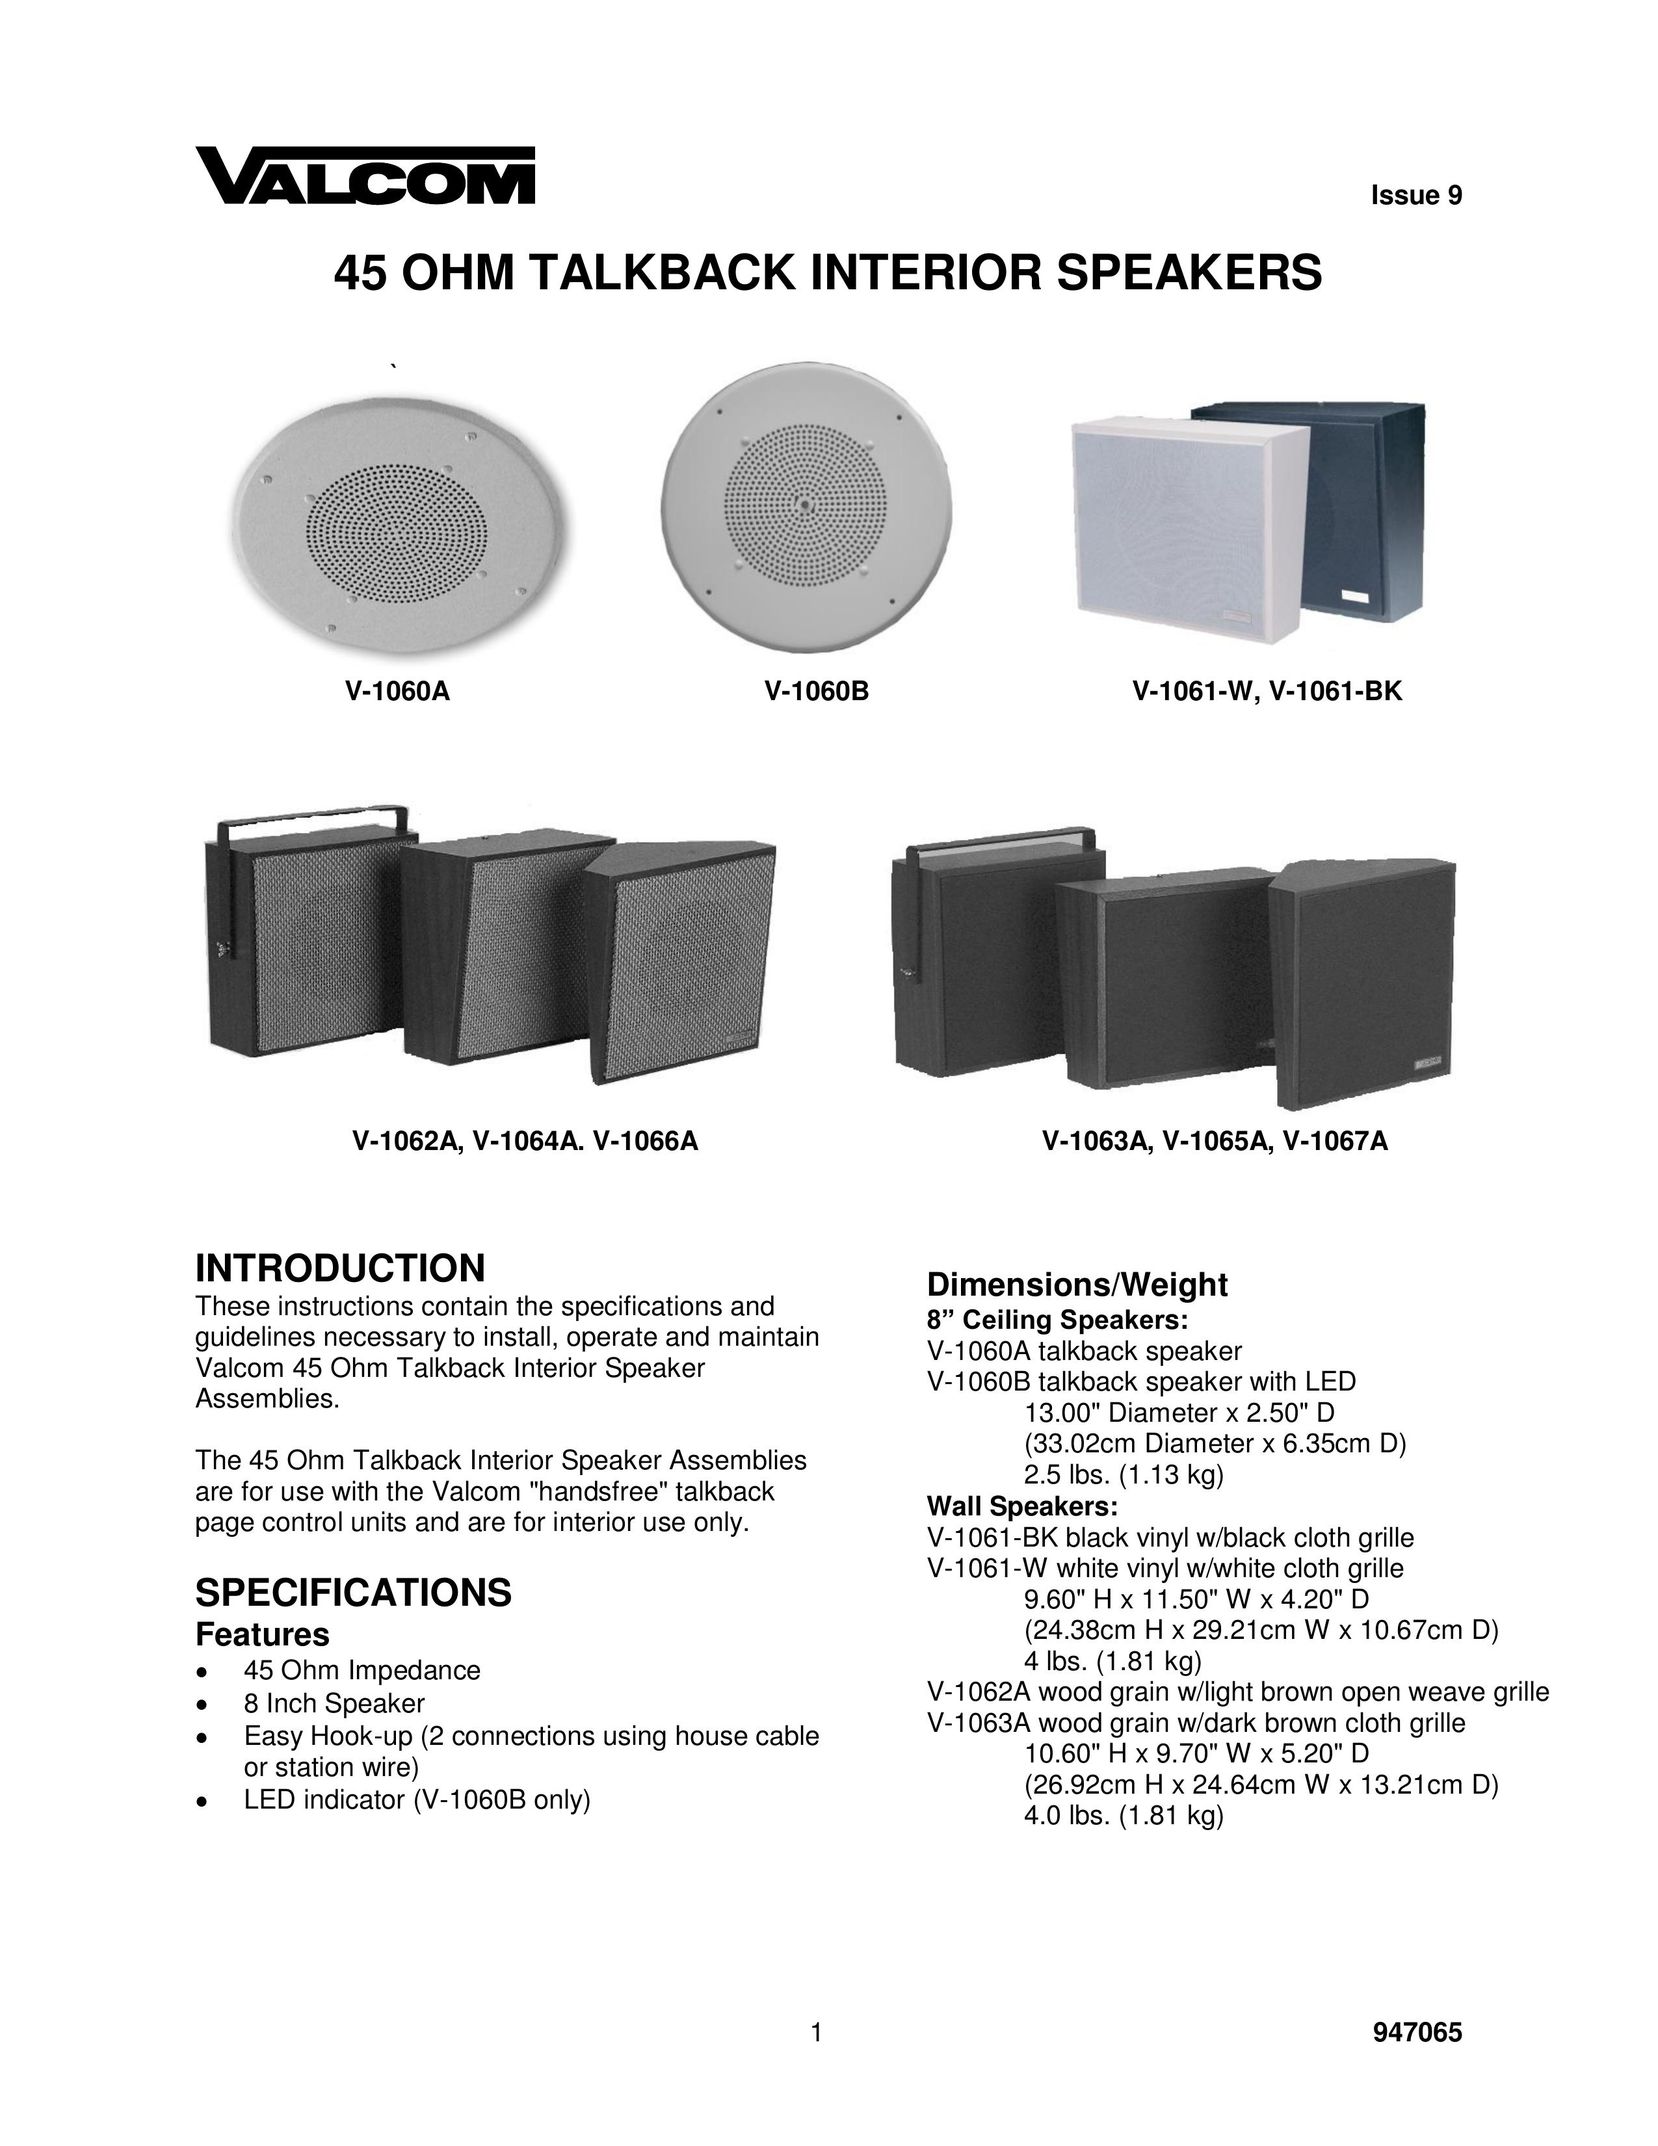 Valcom V-1067A Speaker User Manual